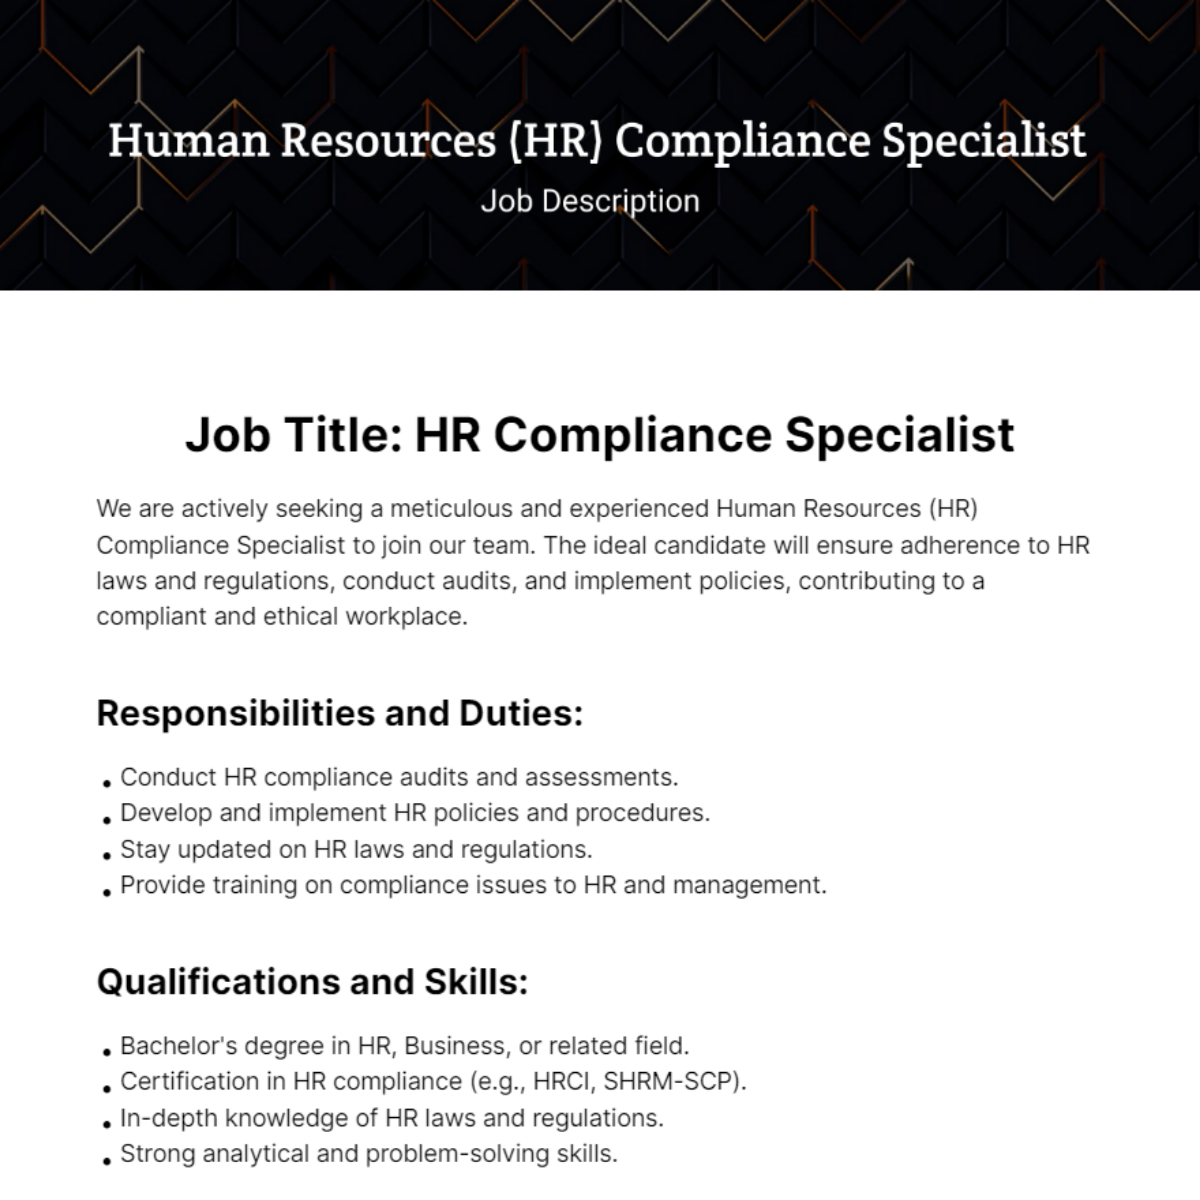 Human Resources (HR) Compliance Specialist Job Description Template